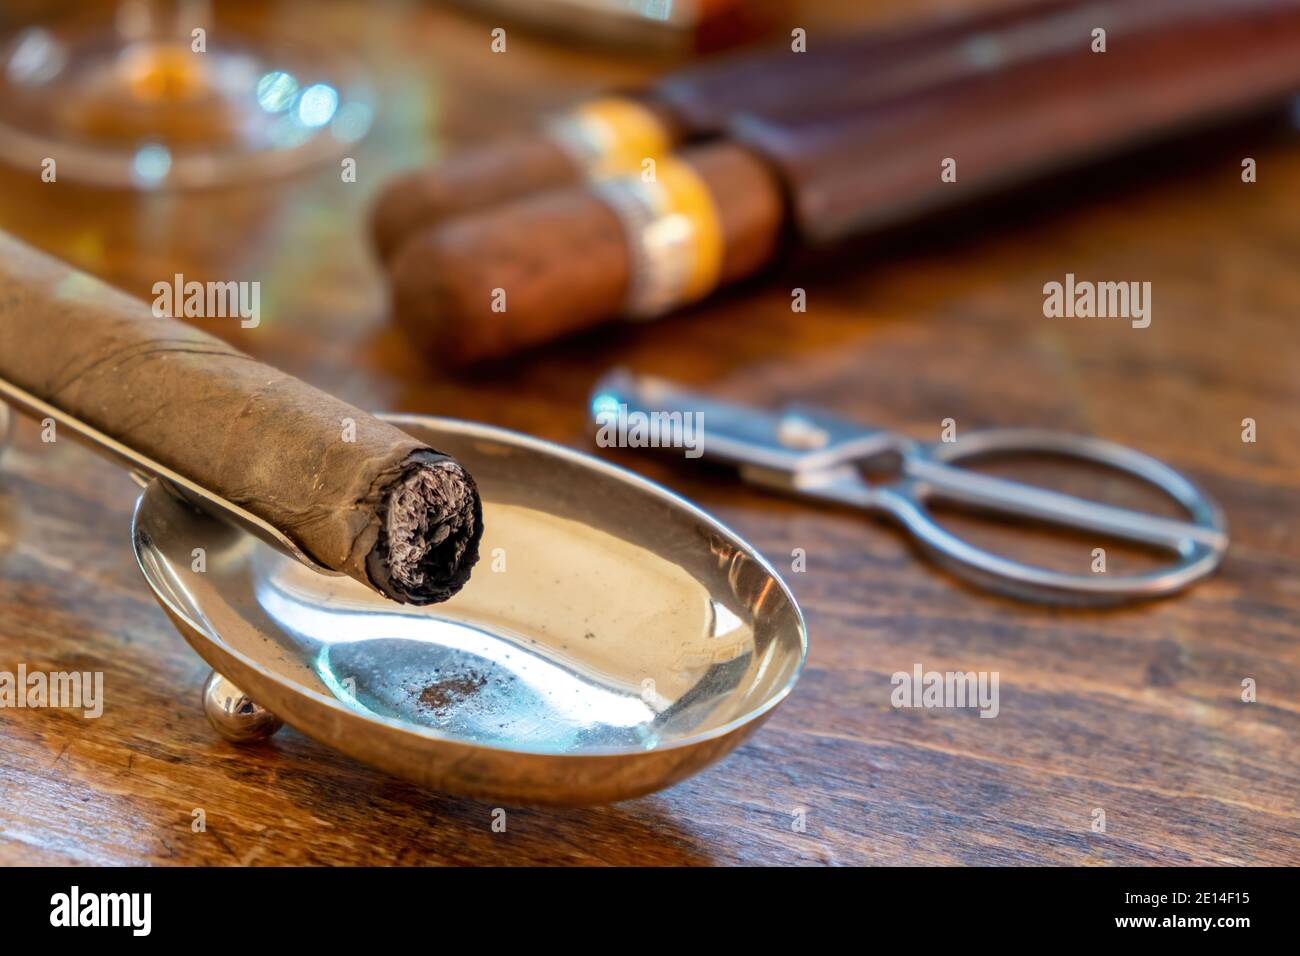 Zigarre in einem Aschenbecher, Holztisch, Nahaufnahme. Kubanische Qualität Zigarre verbrannt, Rauchen Luxus Lebensstil Stockfoto